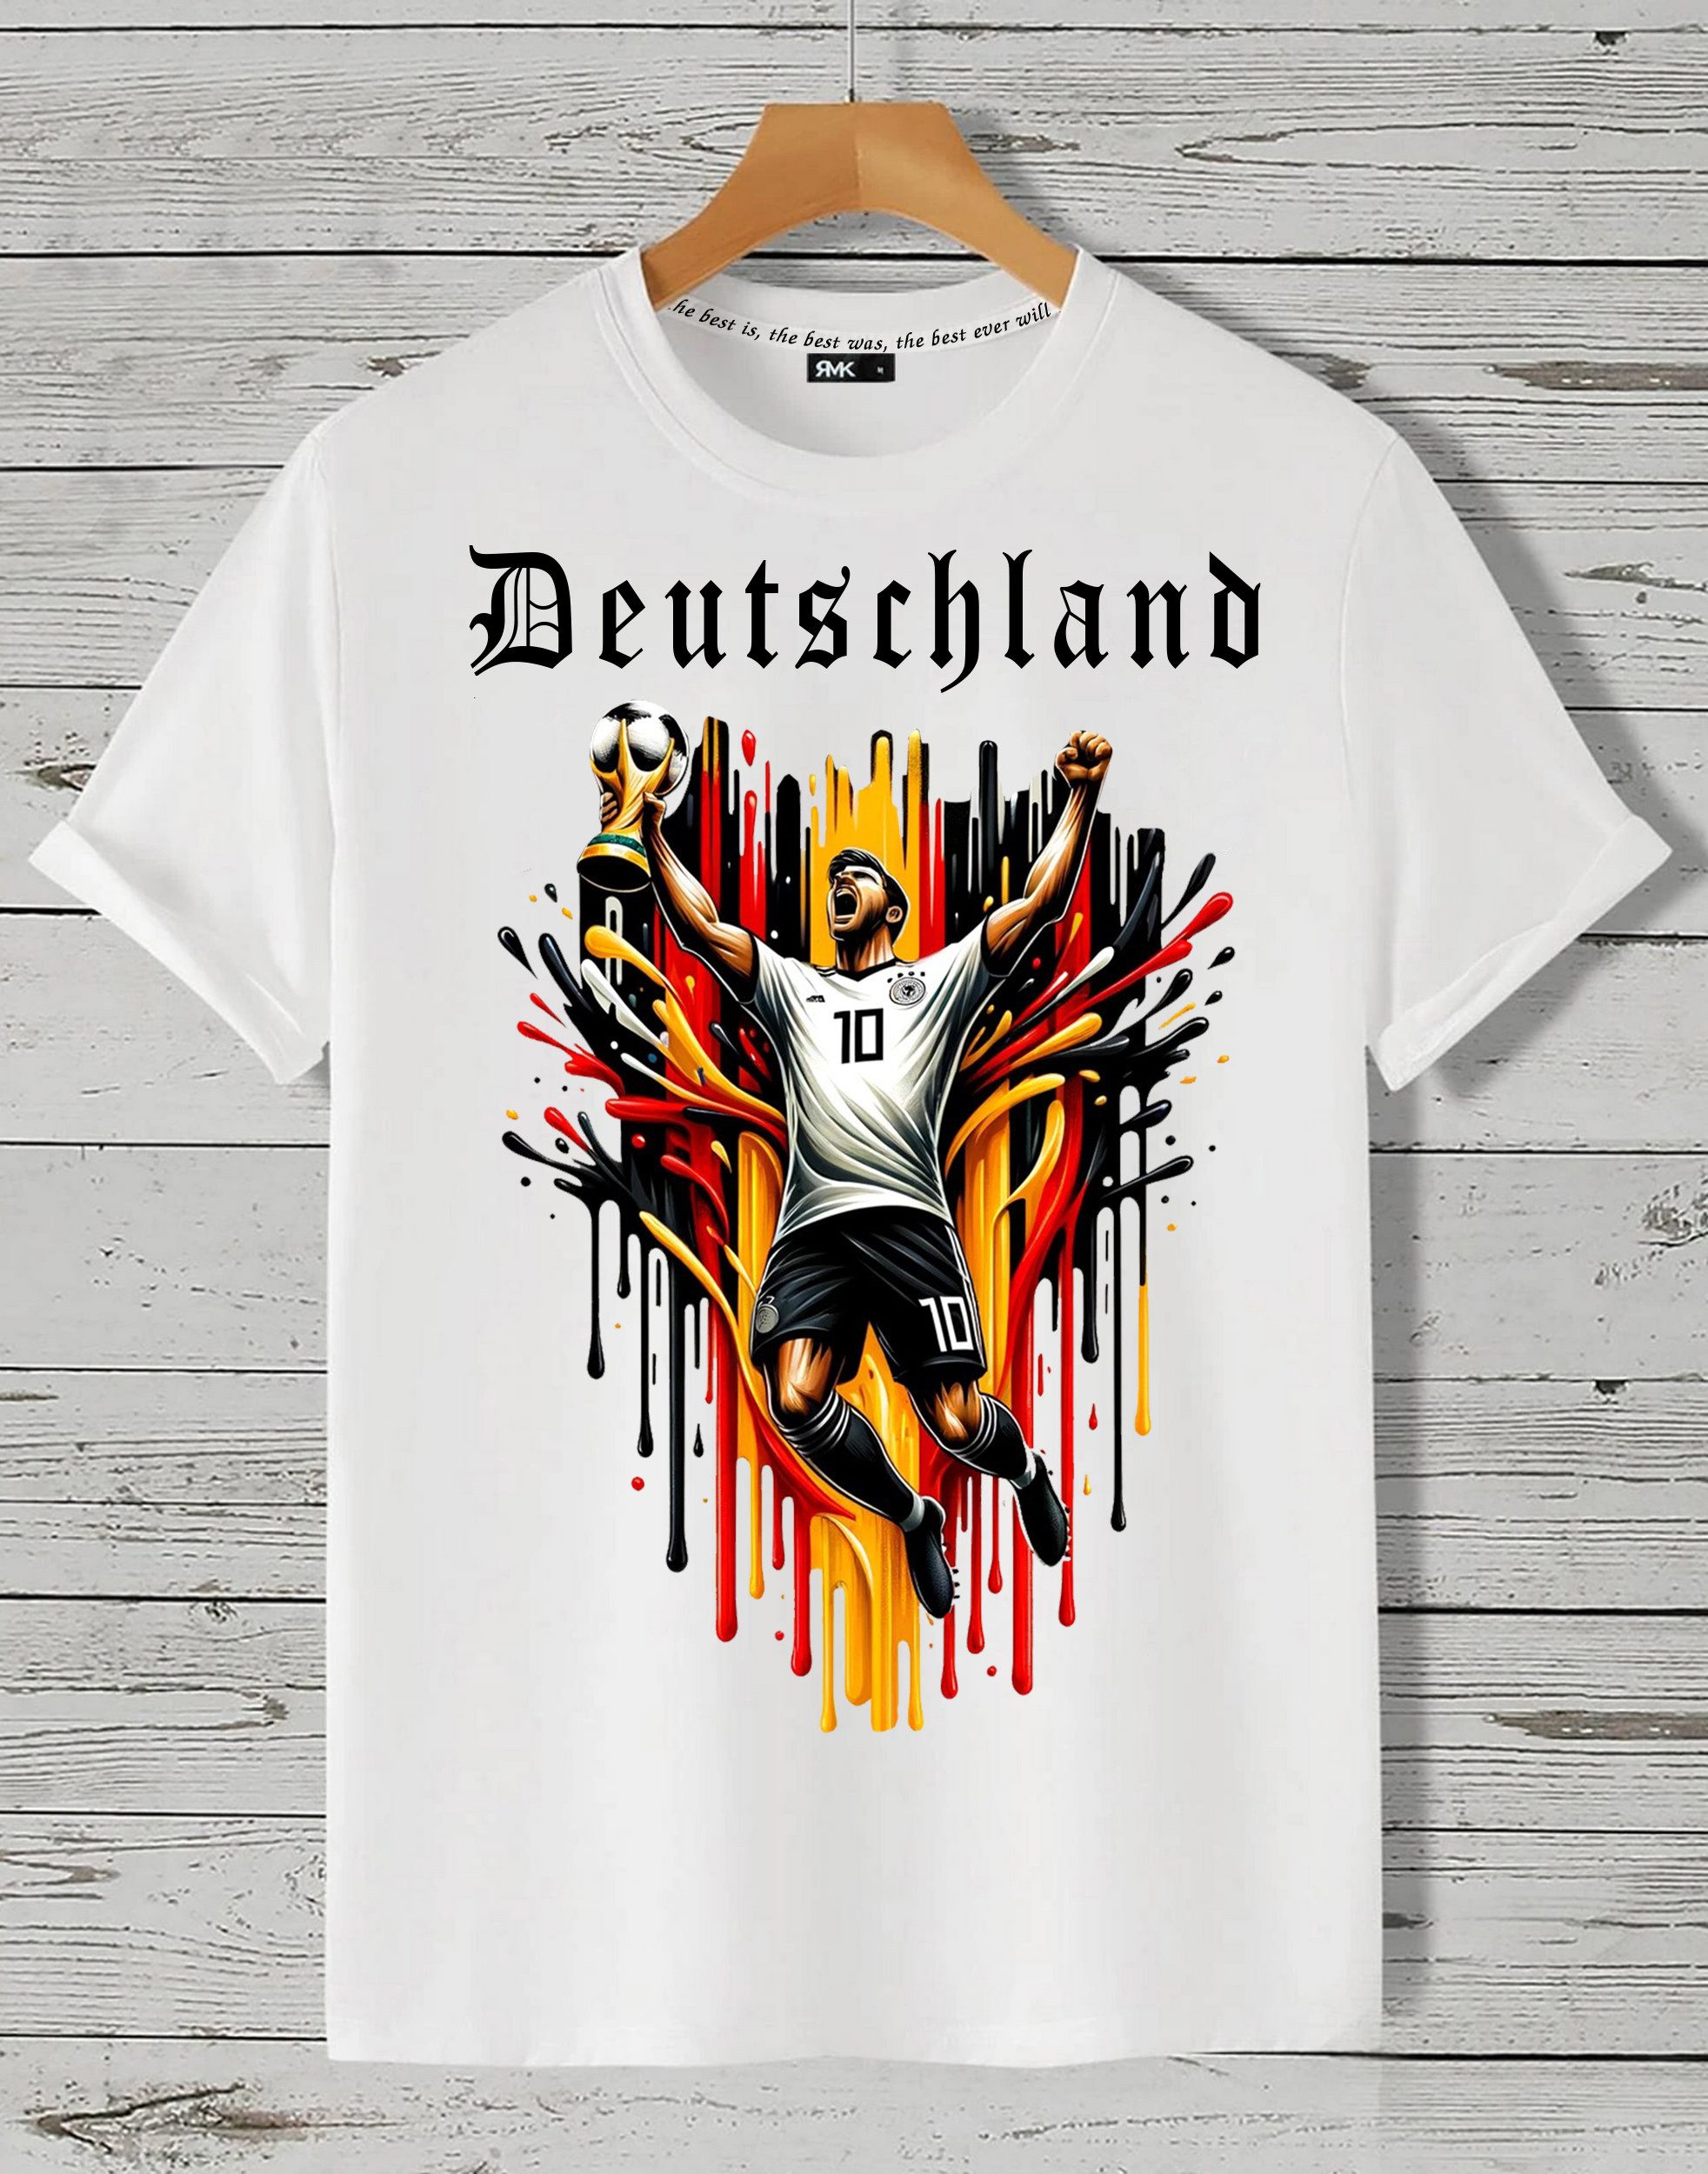 RMK T-Shirt Herren Shirt Fan Trikot Rundhals-Ausschnitt Deutschland Germany EM aus Baumwolle